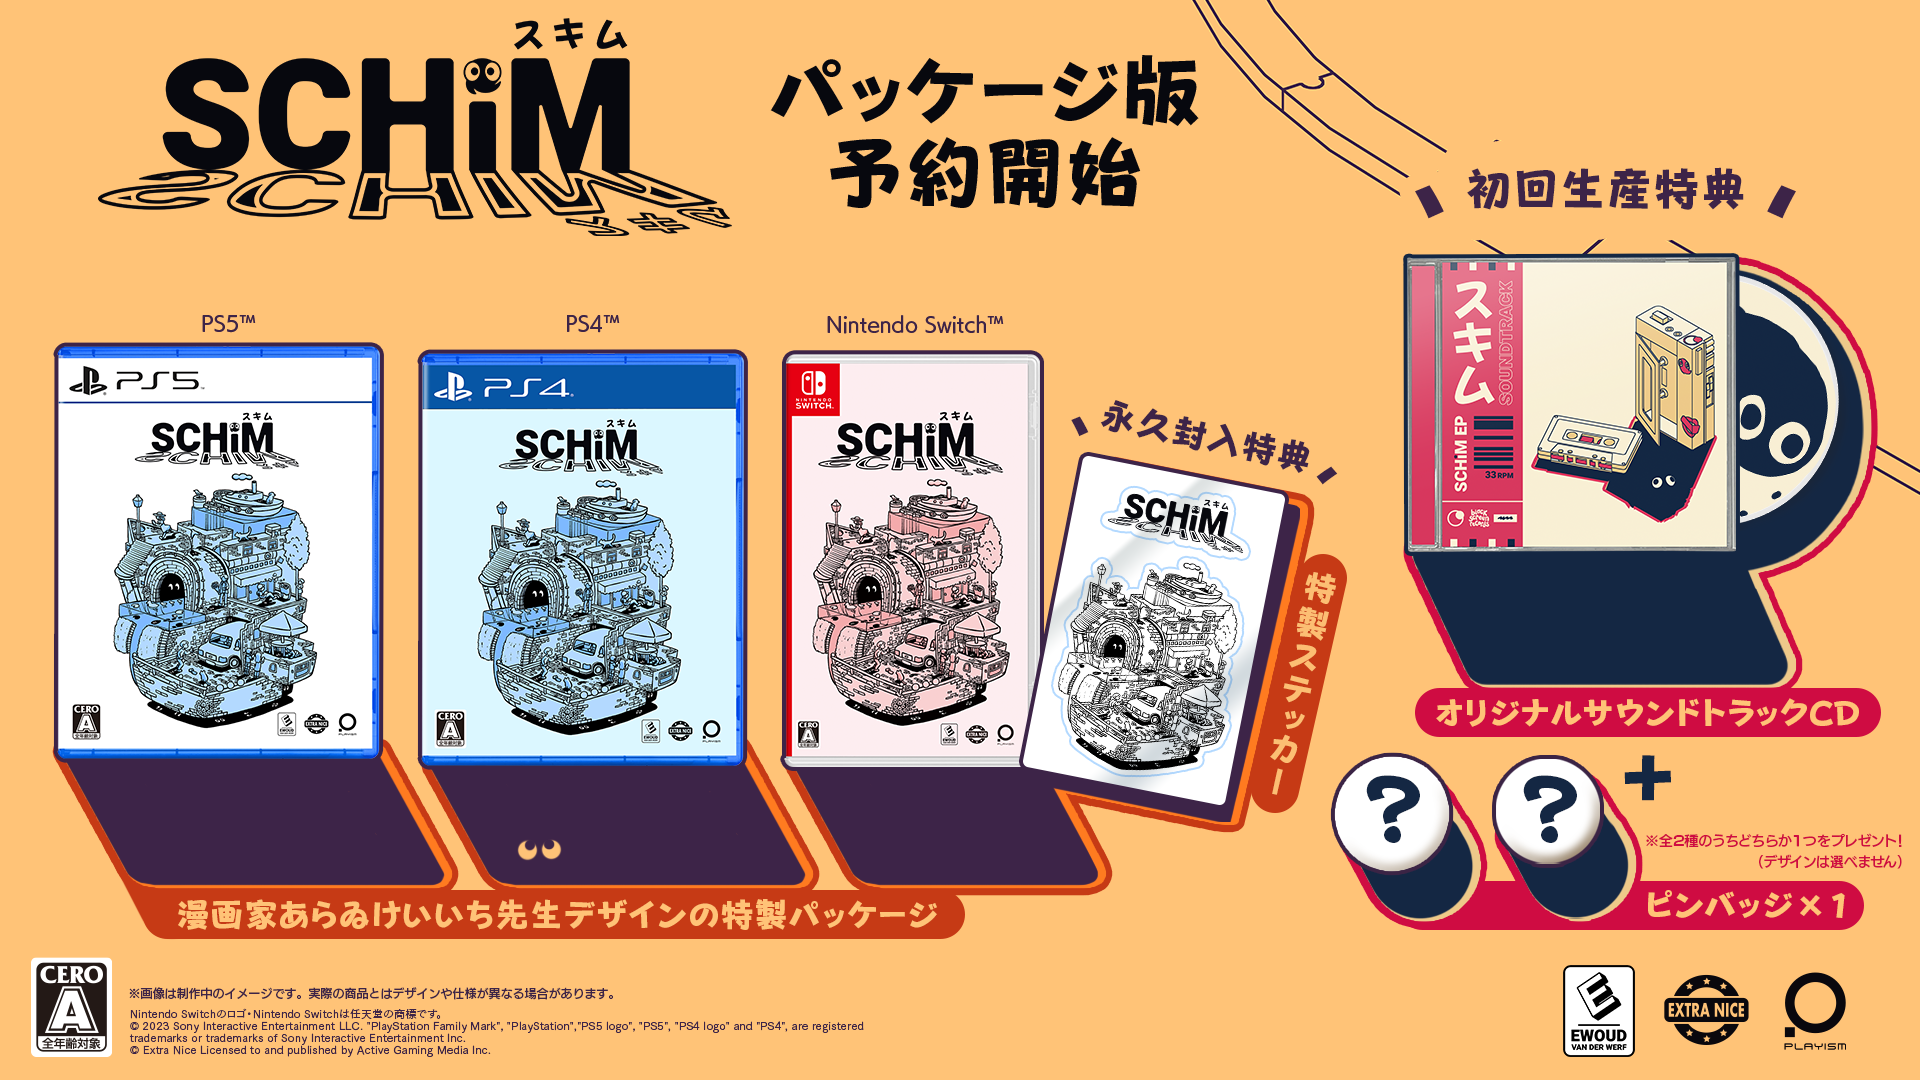 【予約】SCHiM - スキム - [PS4] 初回特典/オリジナル特典「ピンバッジ2種セット」付き(数量限定)